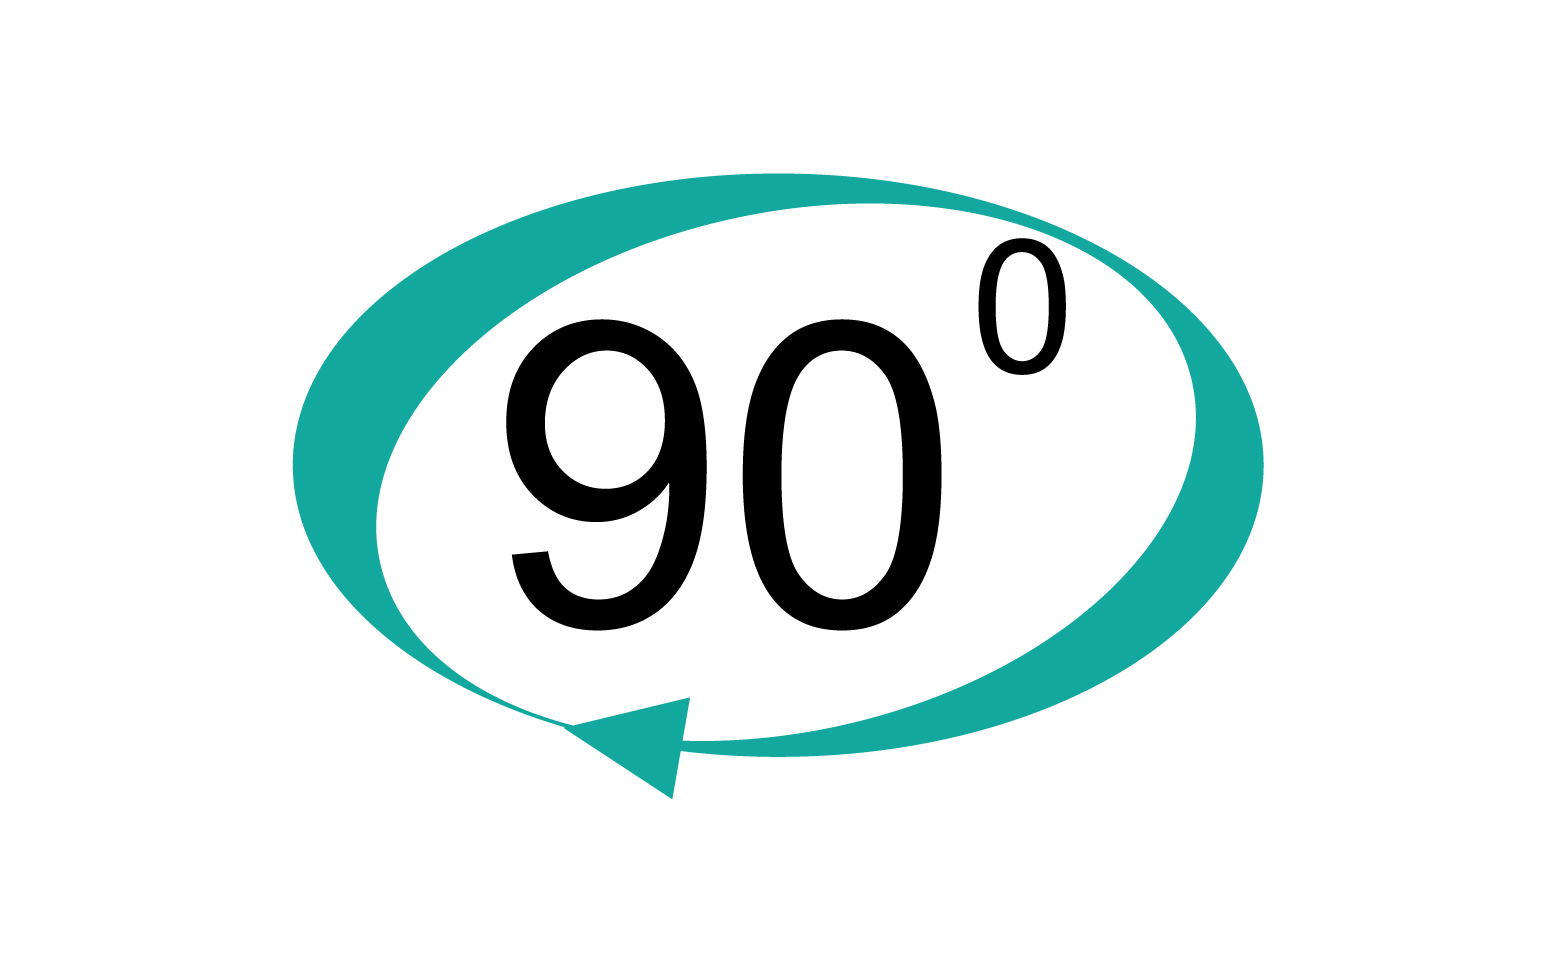 90 degree angle rotation icon symbol logo v57